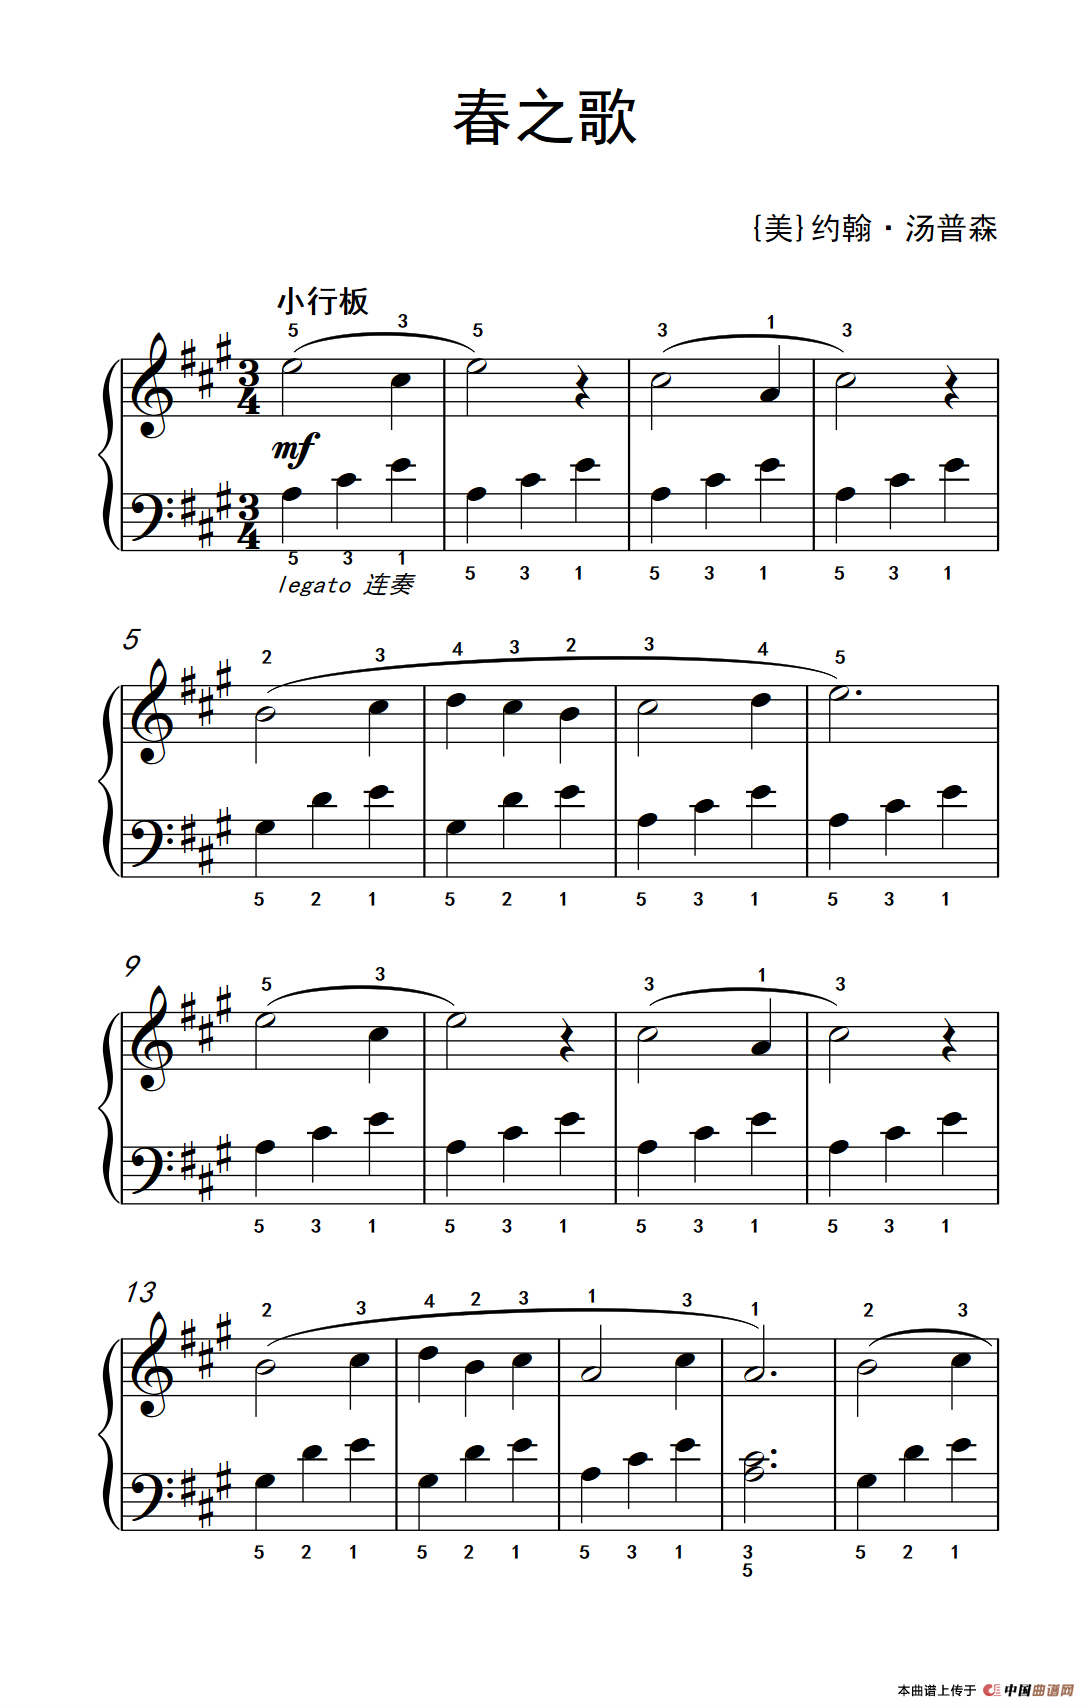 《春之歌》钢琴曲谱图分享